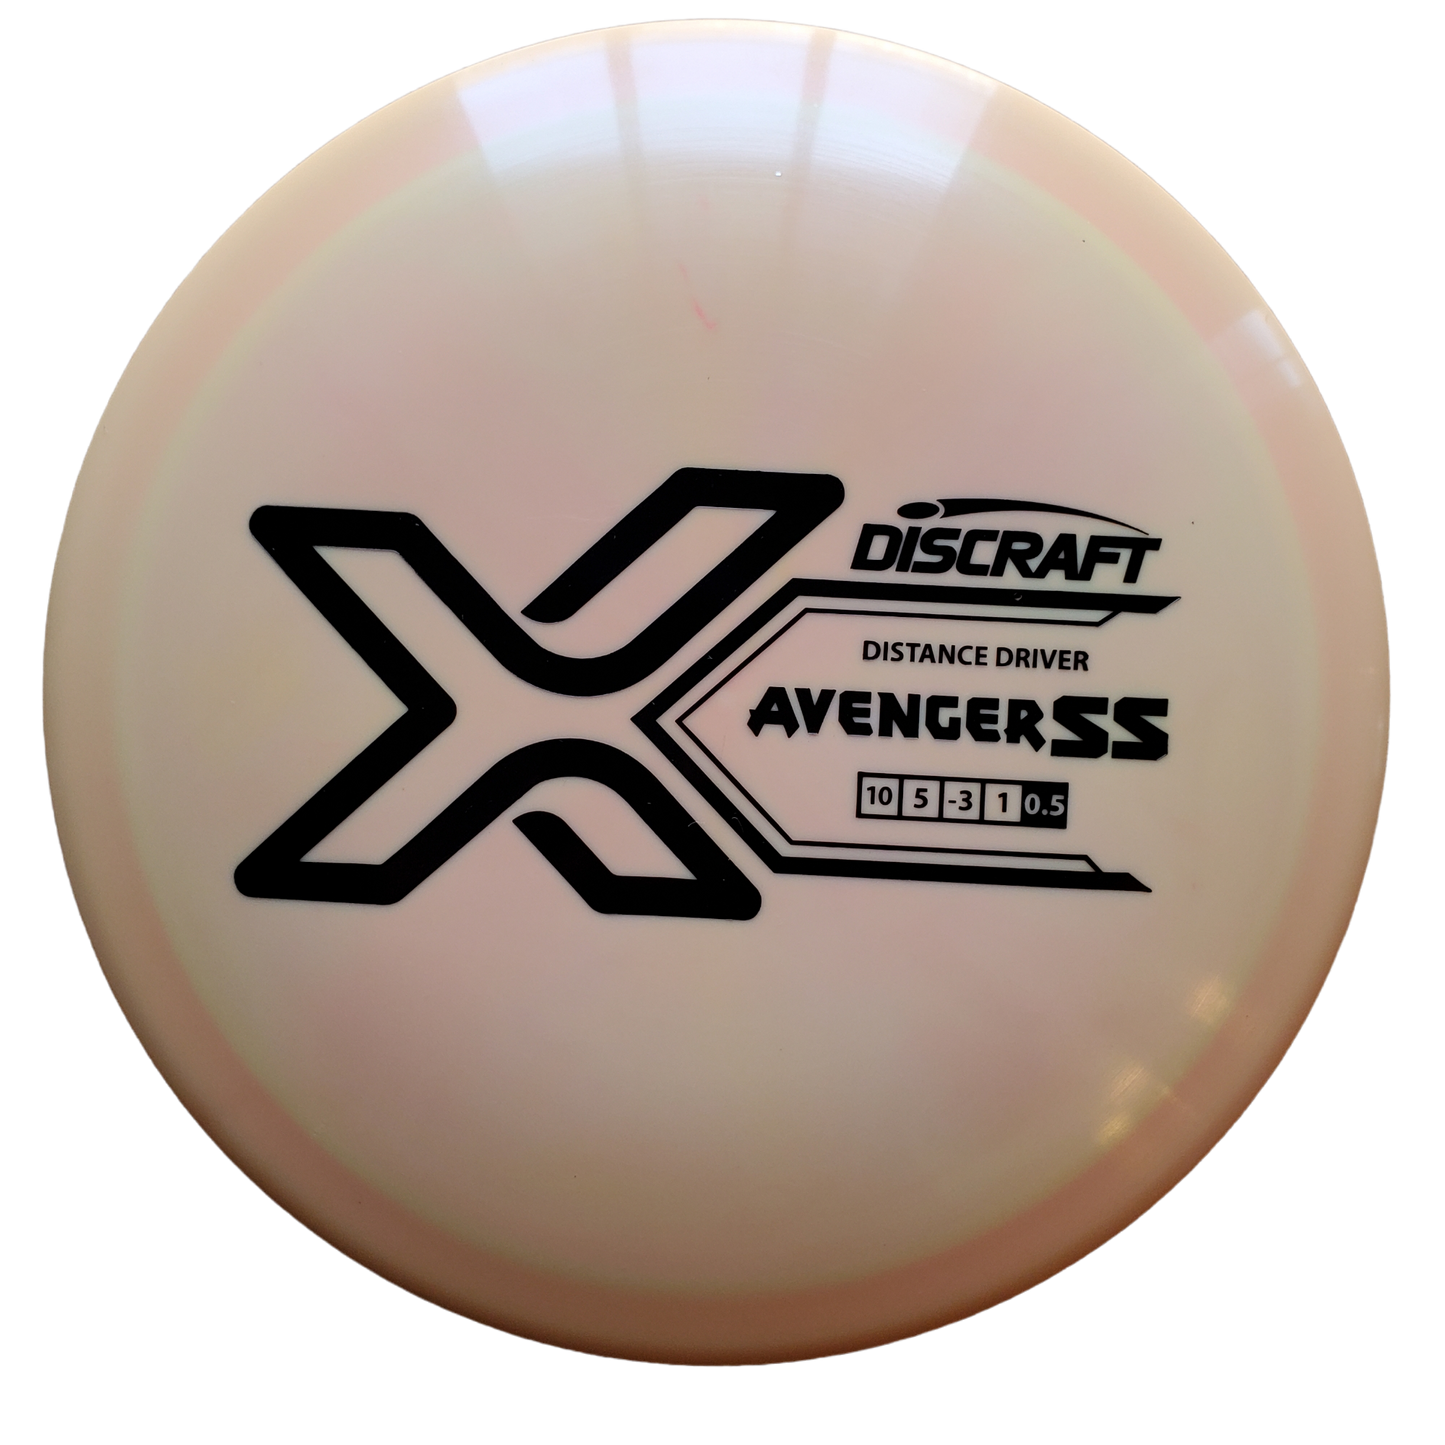 Discraft X Line Avenger SS